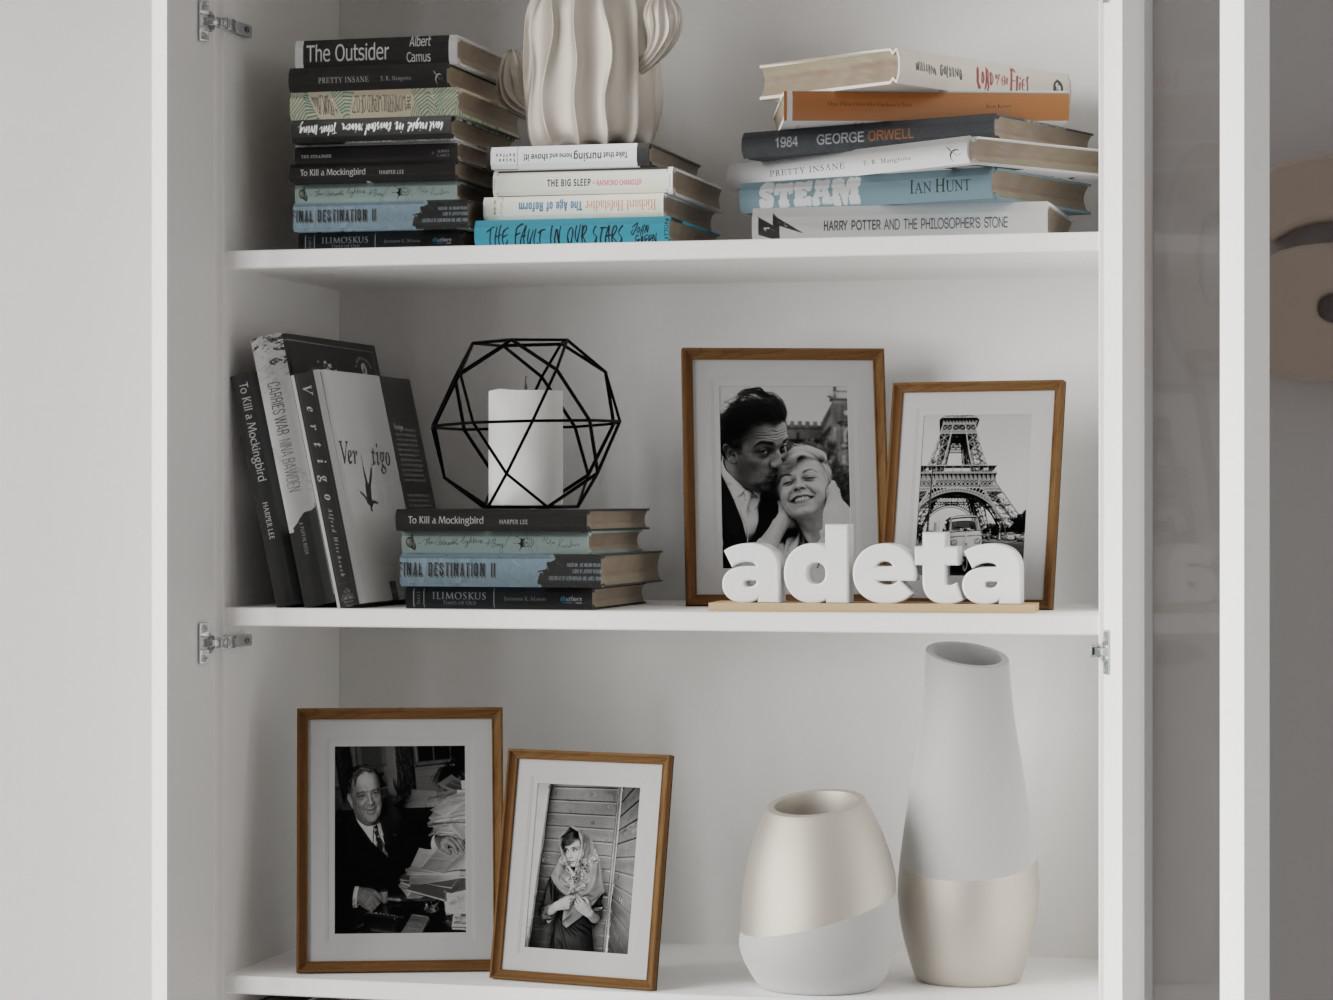 Изображение товара Книжный шкаф Билли 39 white ИКЕА (IKEA), 80x30x202 см на сайте adeta.ru